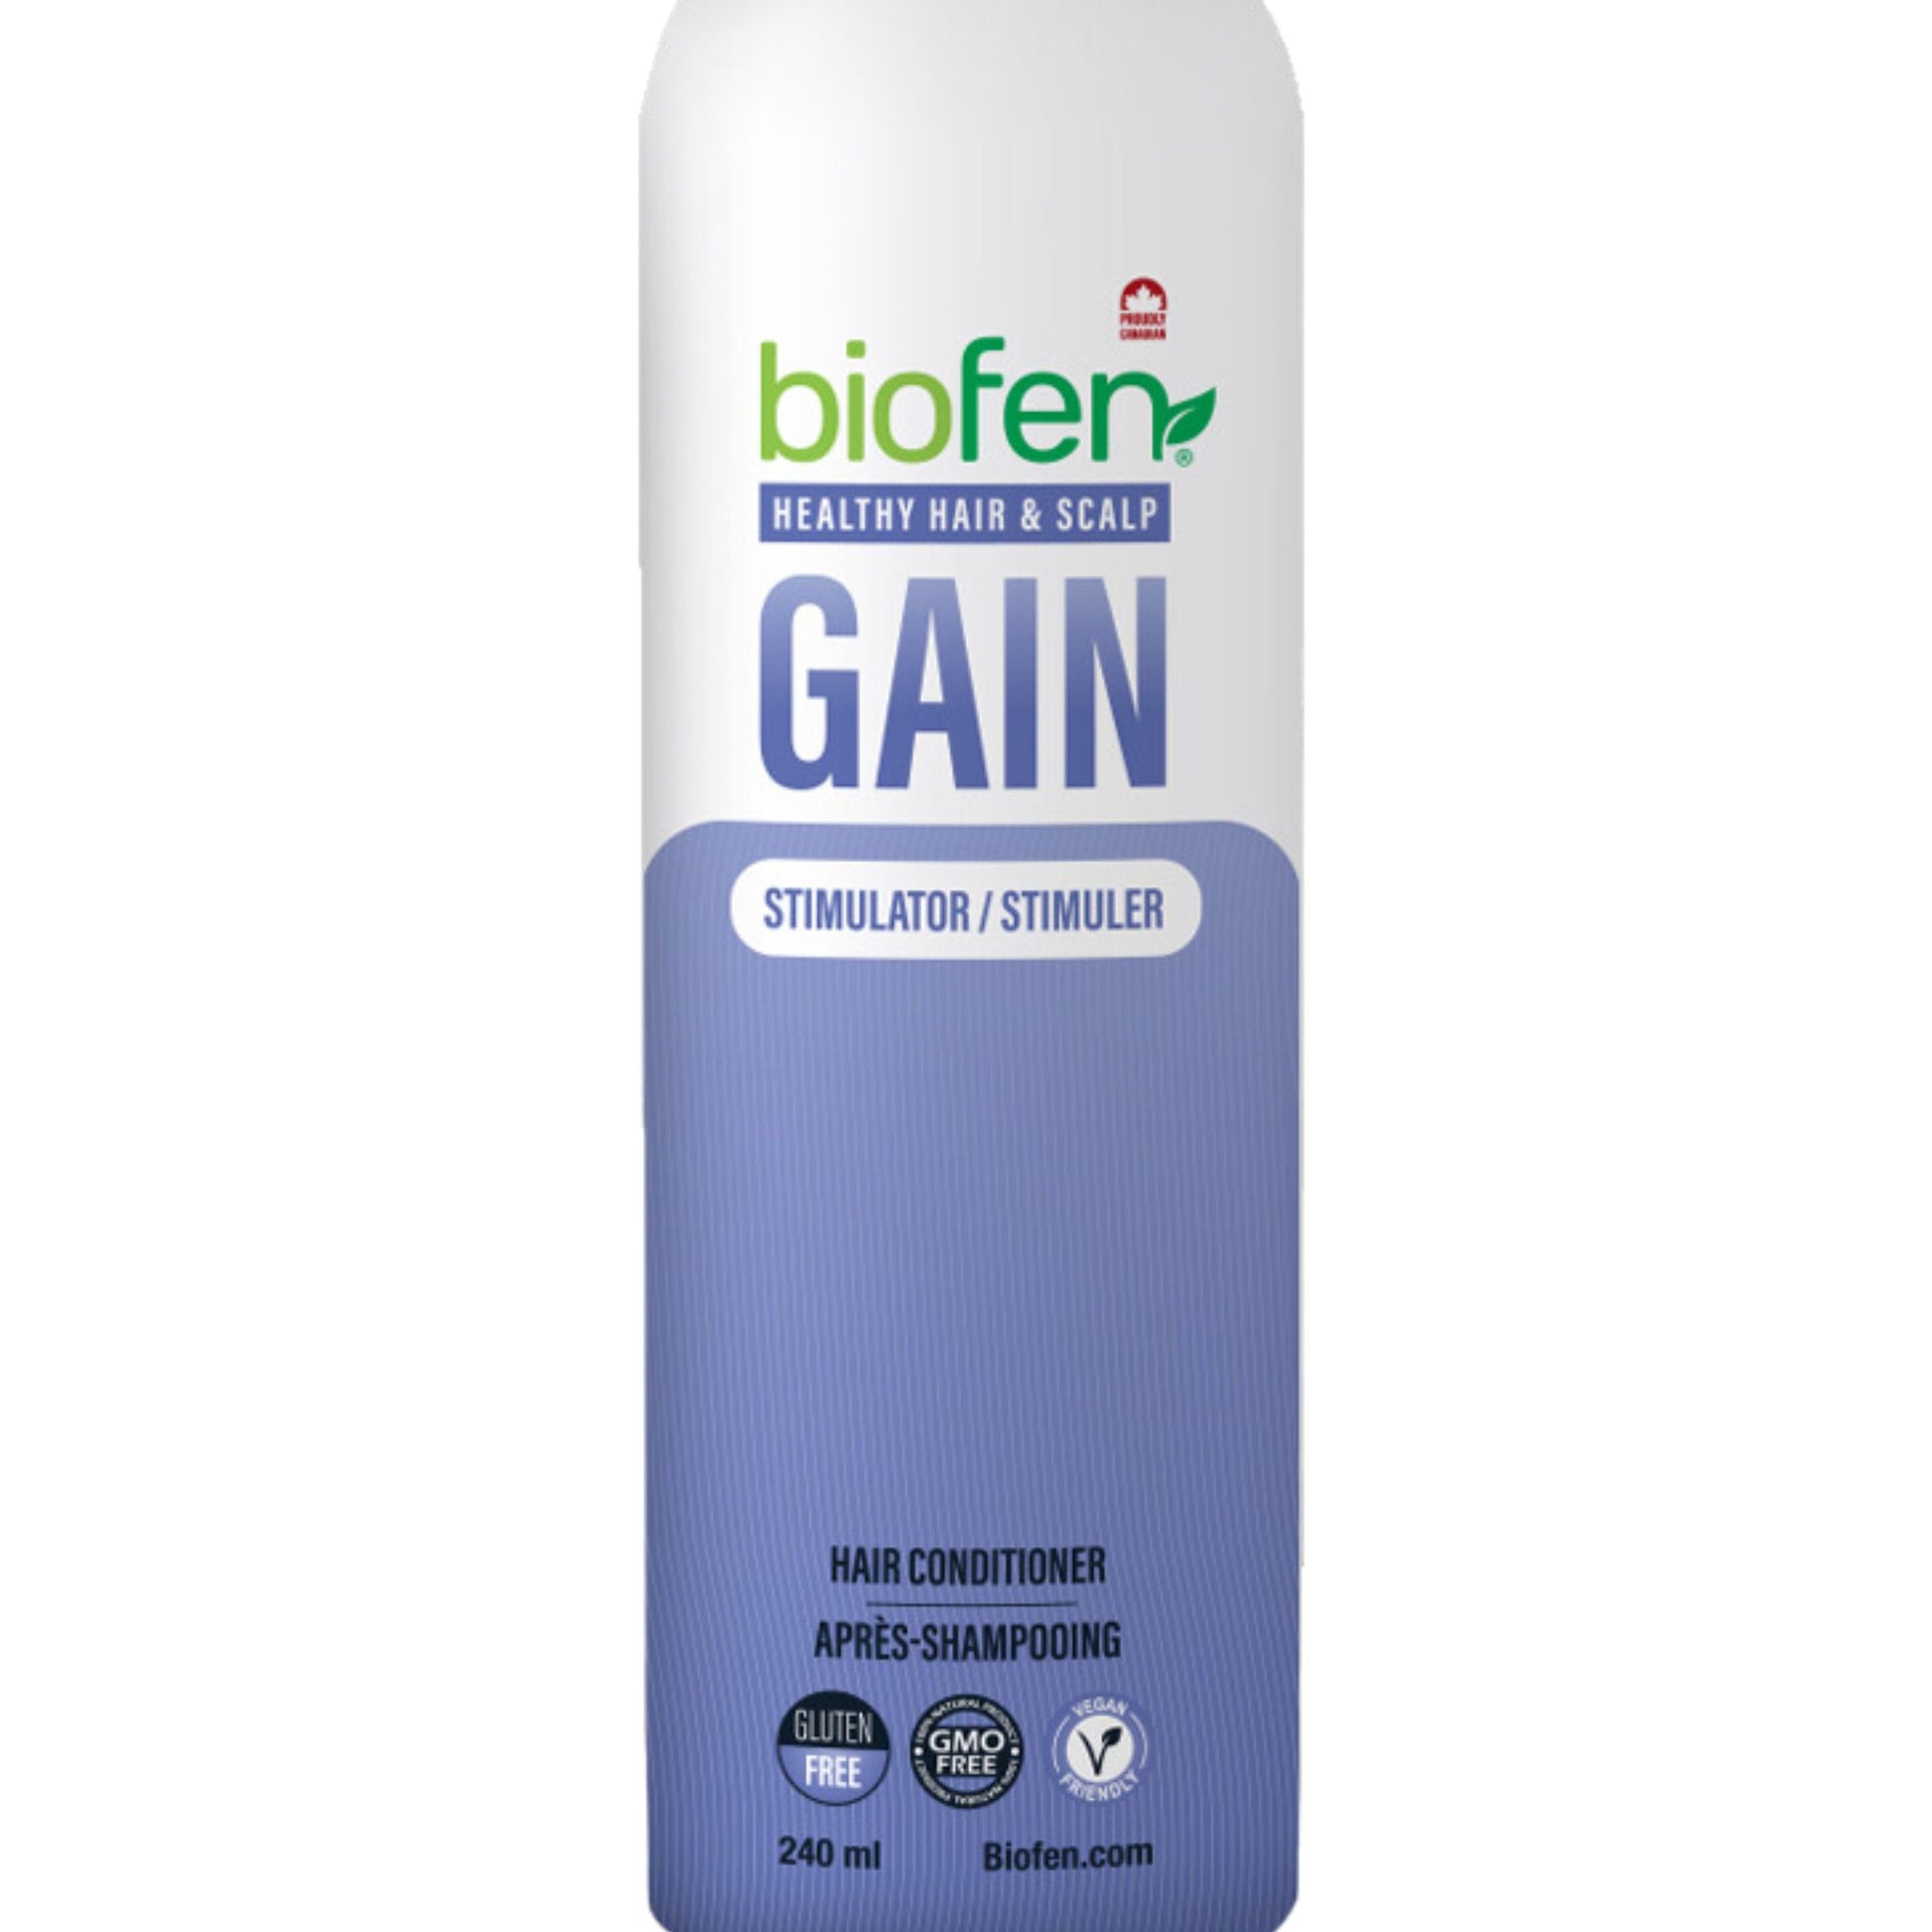 biofen-healthy-hair-conditioner-240ml